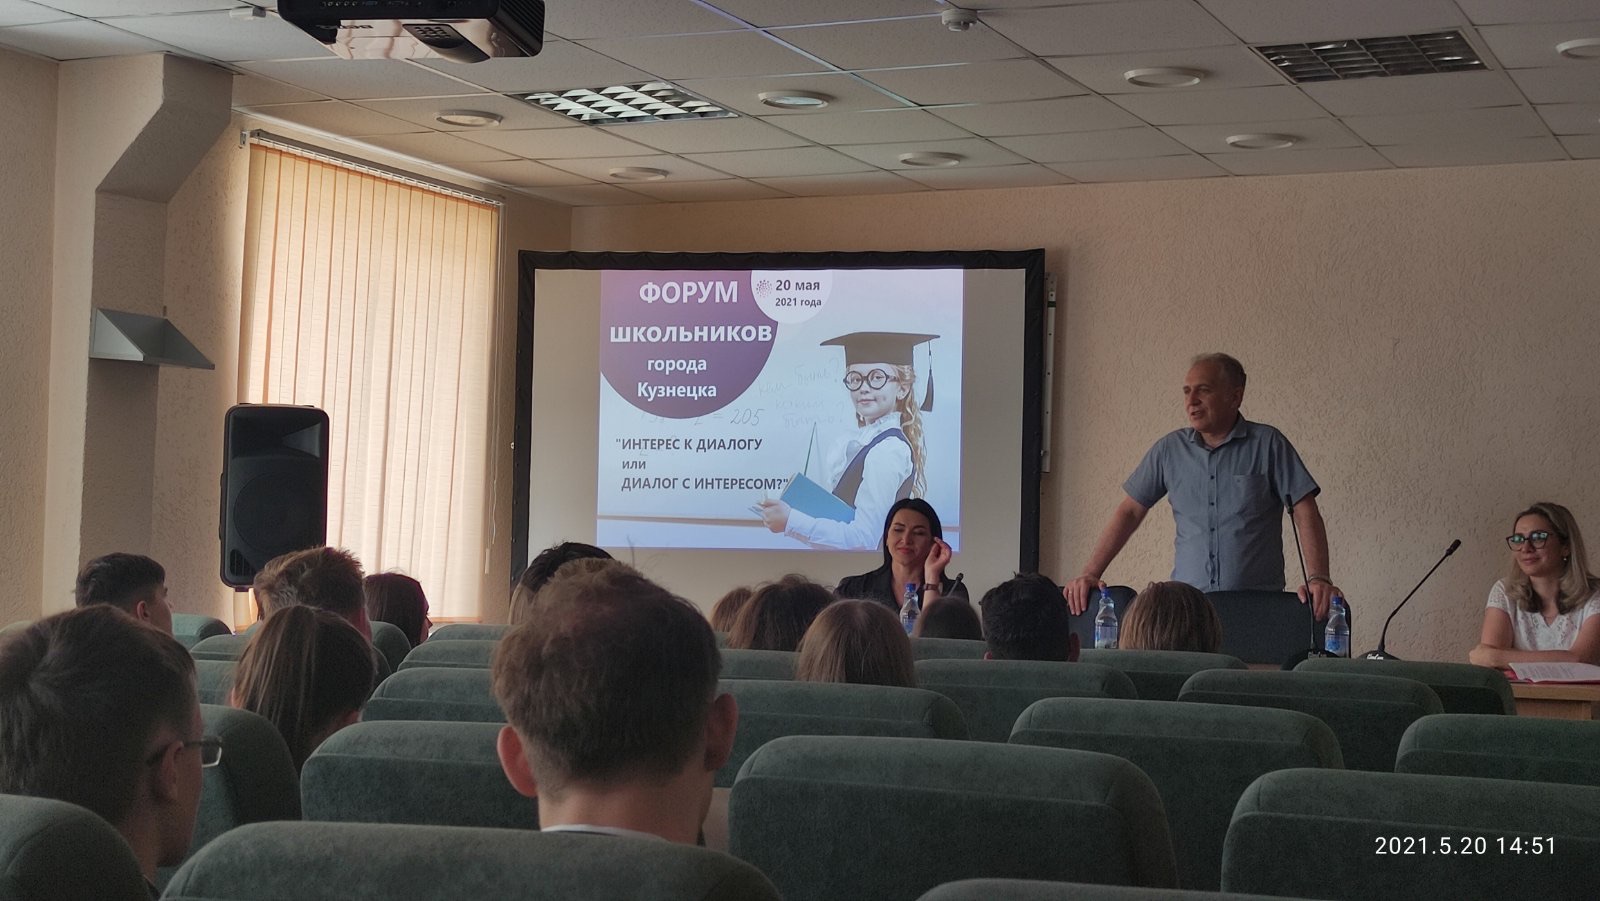 В Кузнецке прошел Форум школьников «Интерес к диалогу или диалог с интересом?»